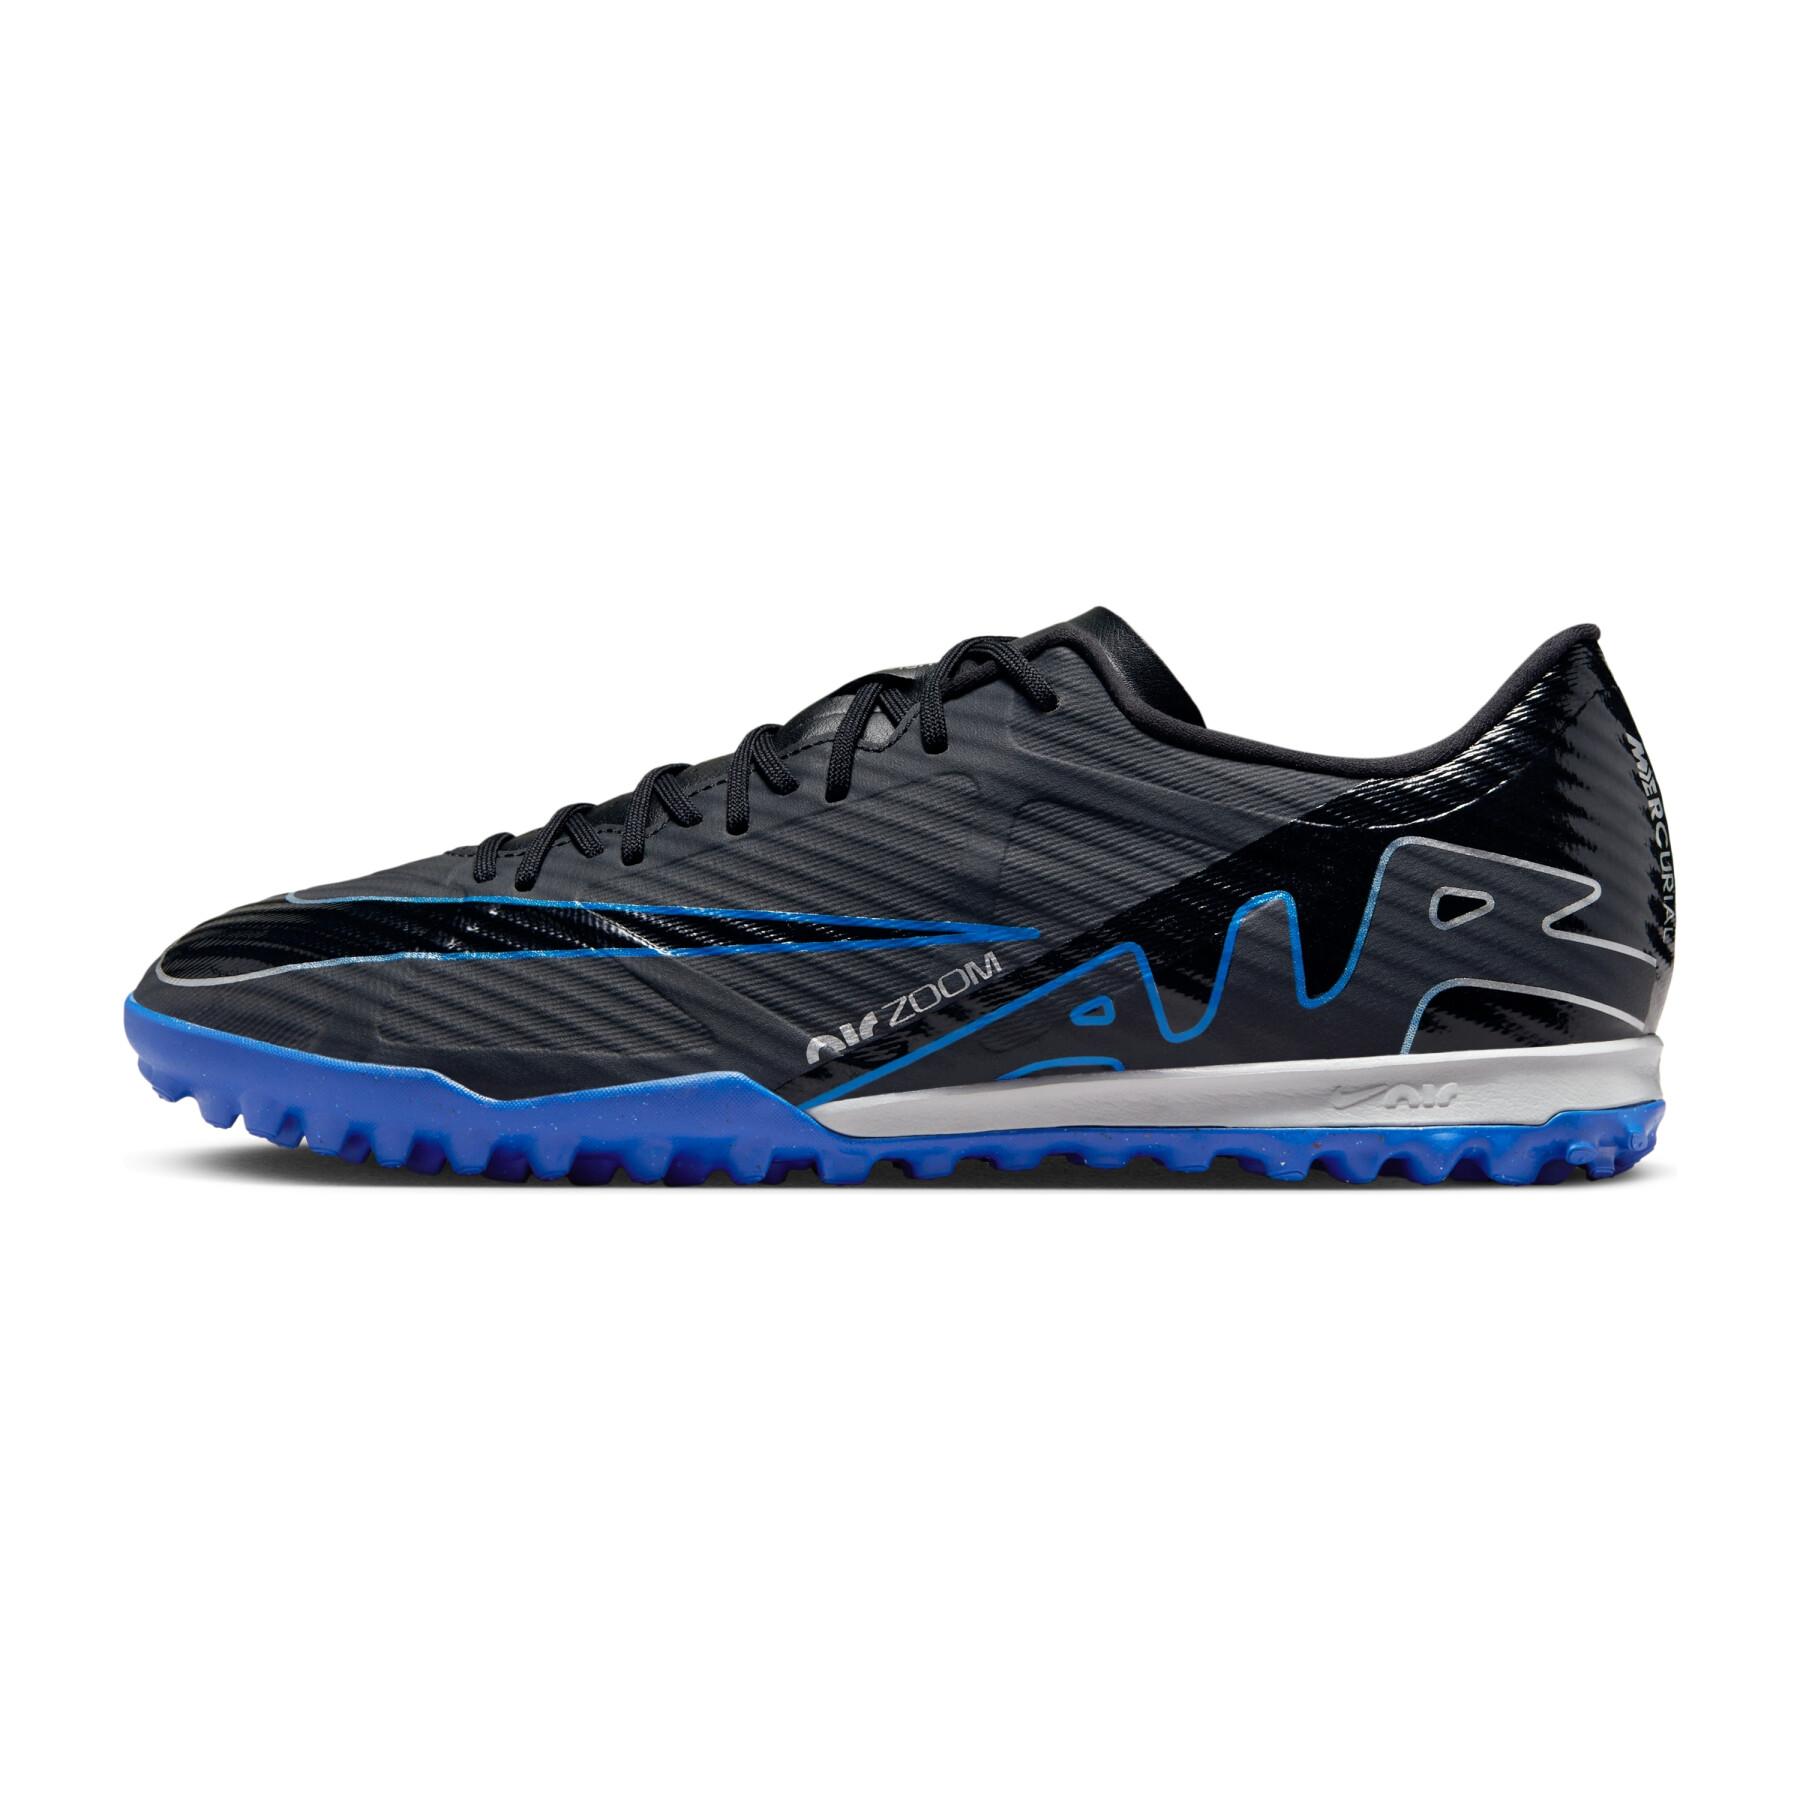 Sapatos de futebol Nike Mercurial Vapor 15 Academy TF